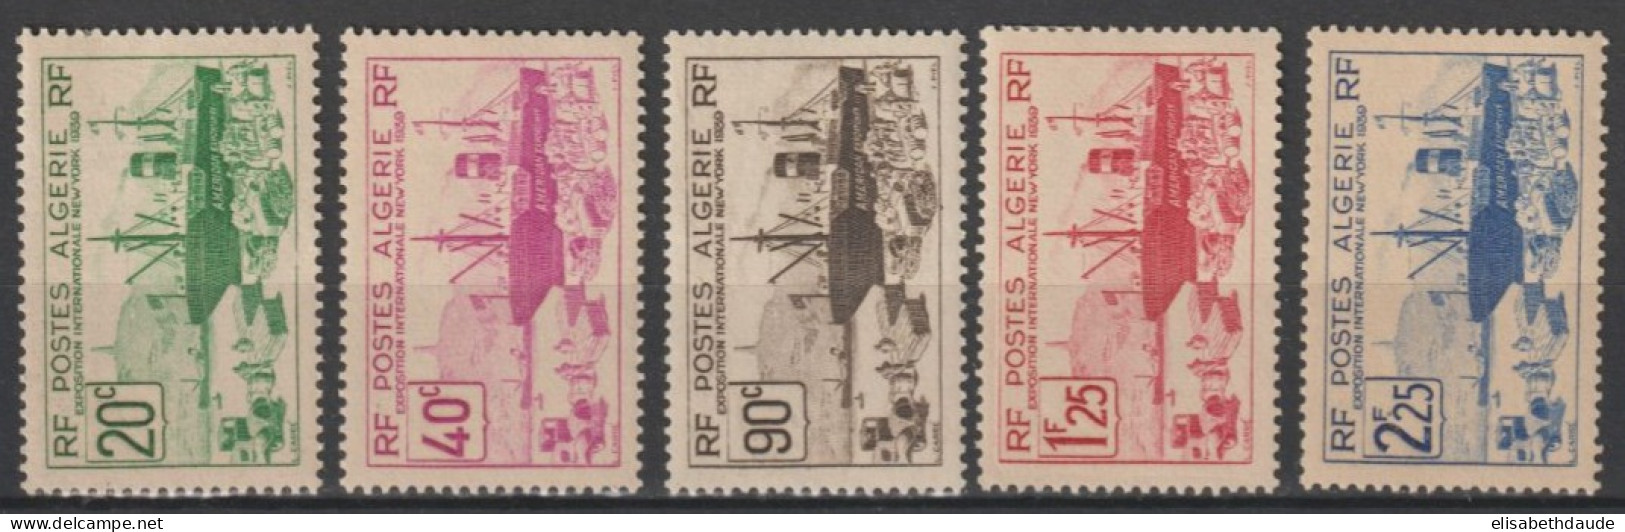 ALGERIE - 1939 - YVERT N° 153/157 SERIE COMPLETE ** MNH (156 * MLH) - COTE 2022 = 24.5 EUR. - - Ongebruikt